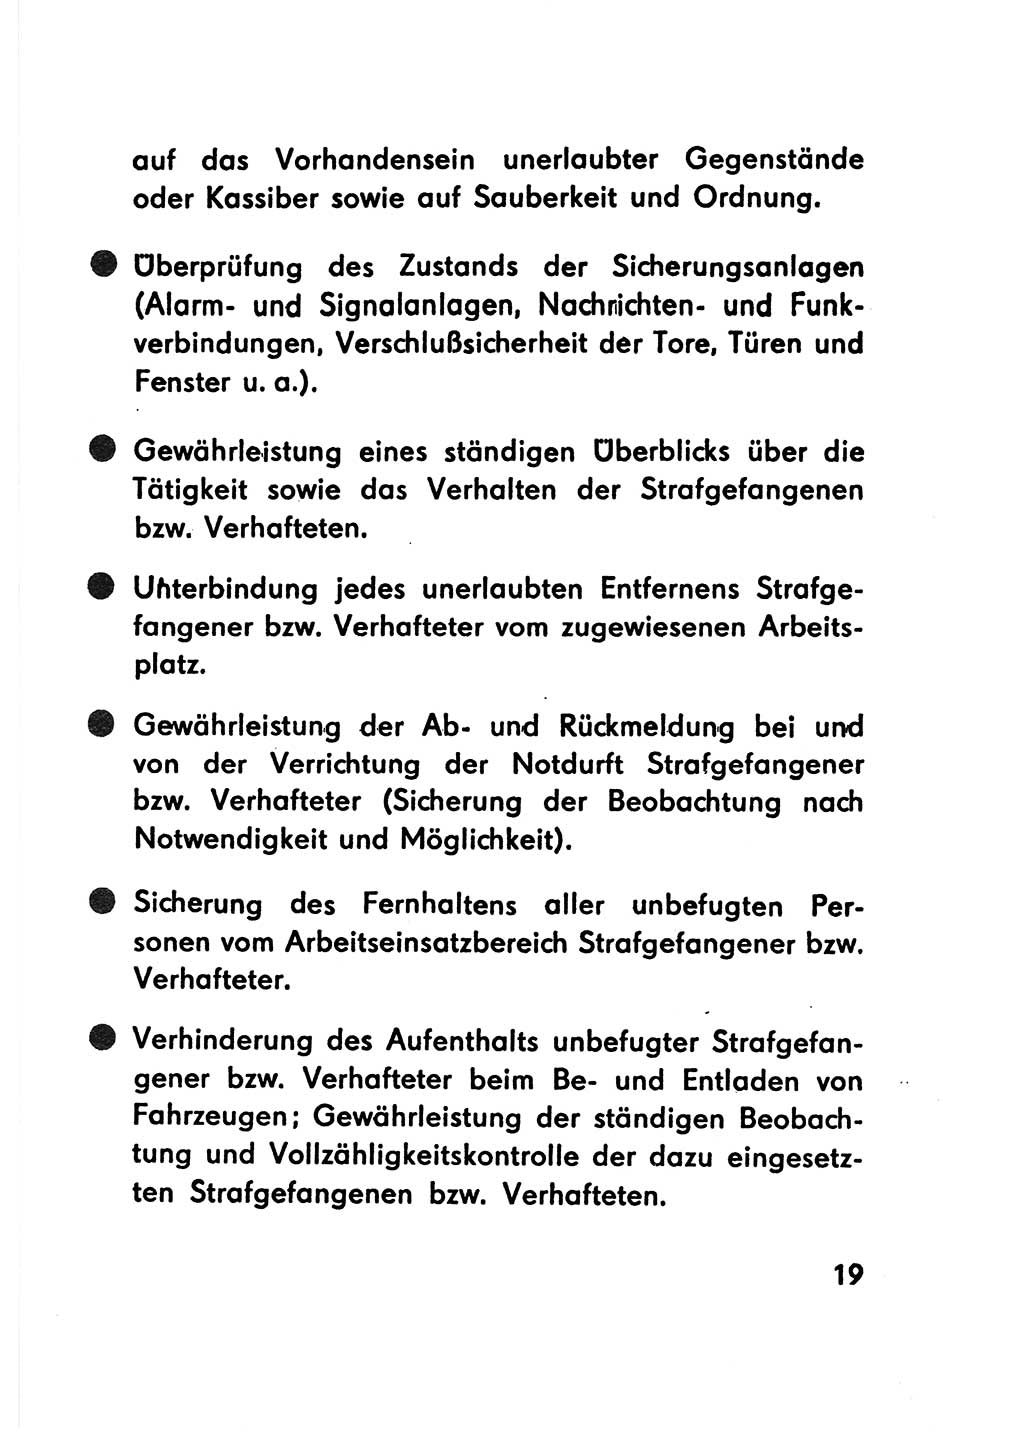 Merkbuch für SV-Angehörige [Strafvollzug (SV) Deutsche Demokratische Republik (DDR)] 1975, Seite 19 (SV-Angeh. DDR 1975, S. 19)